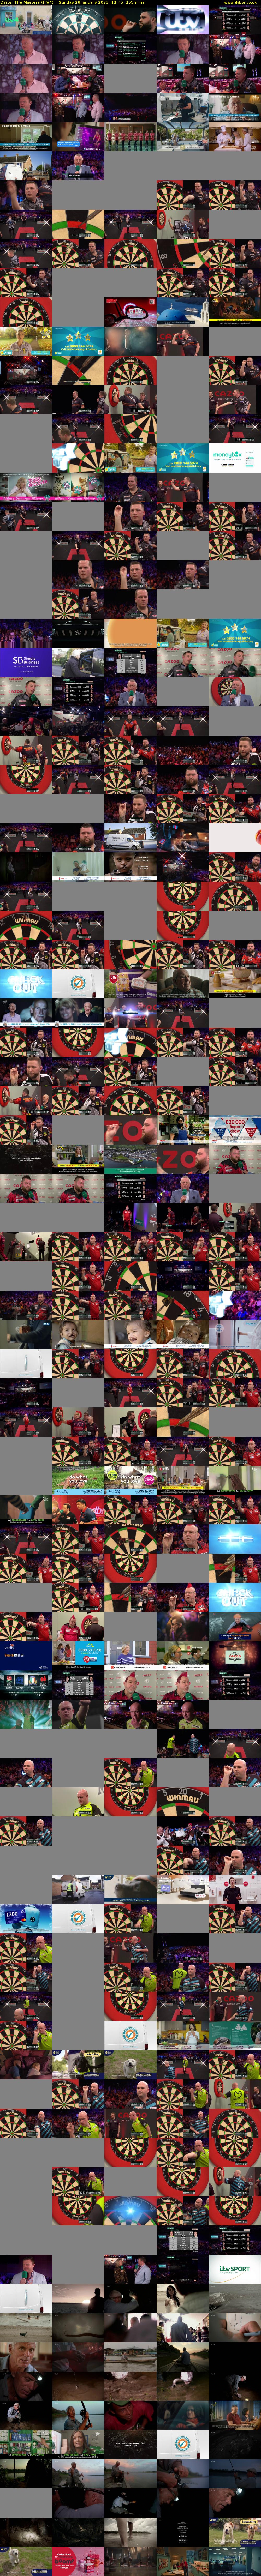 Darts: The Masters (ITV4) Sunday 29 January 2023 12:45 - 17:00